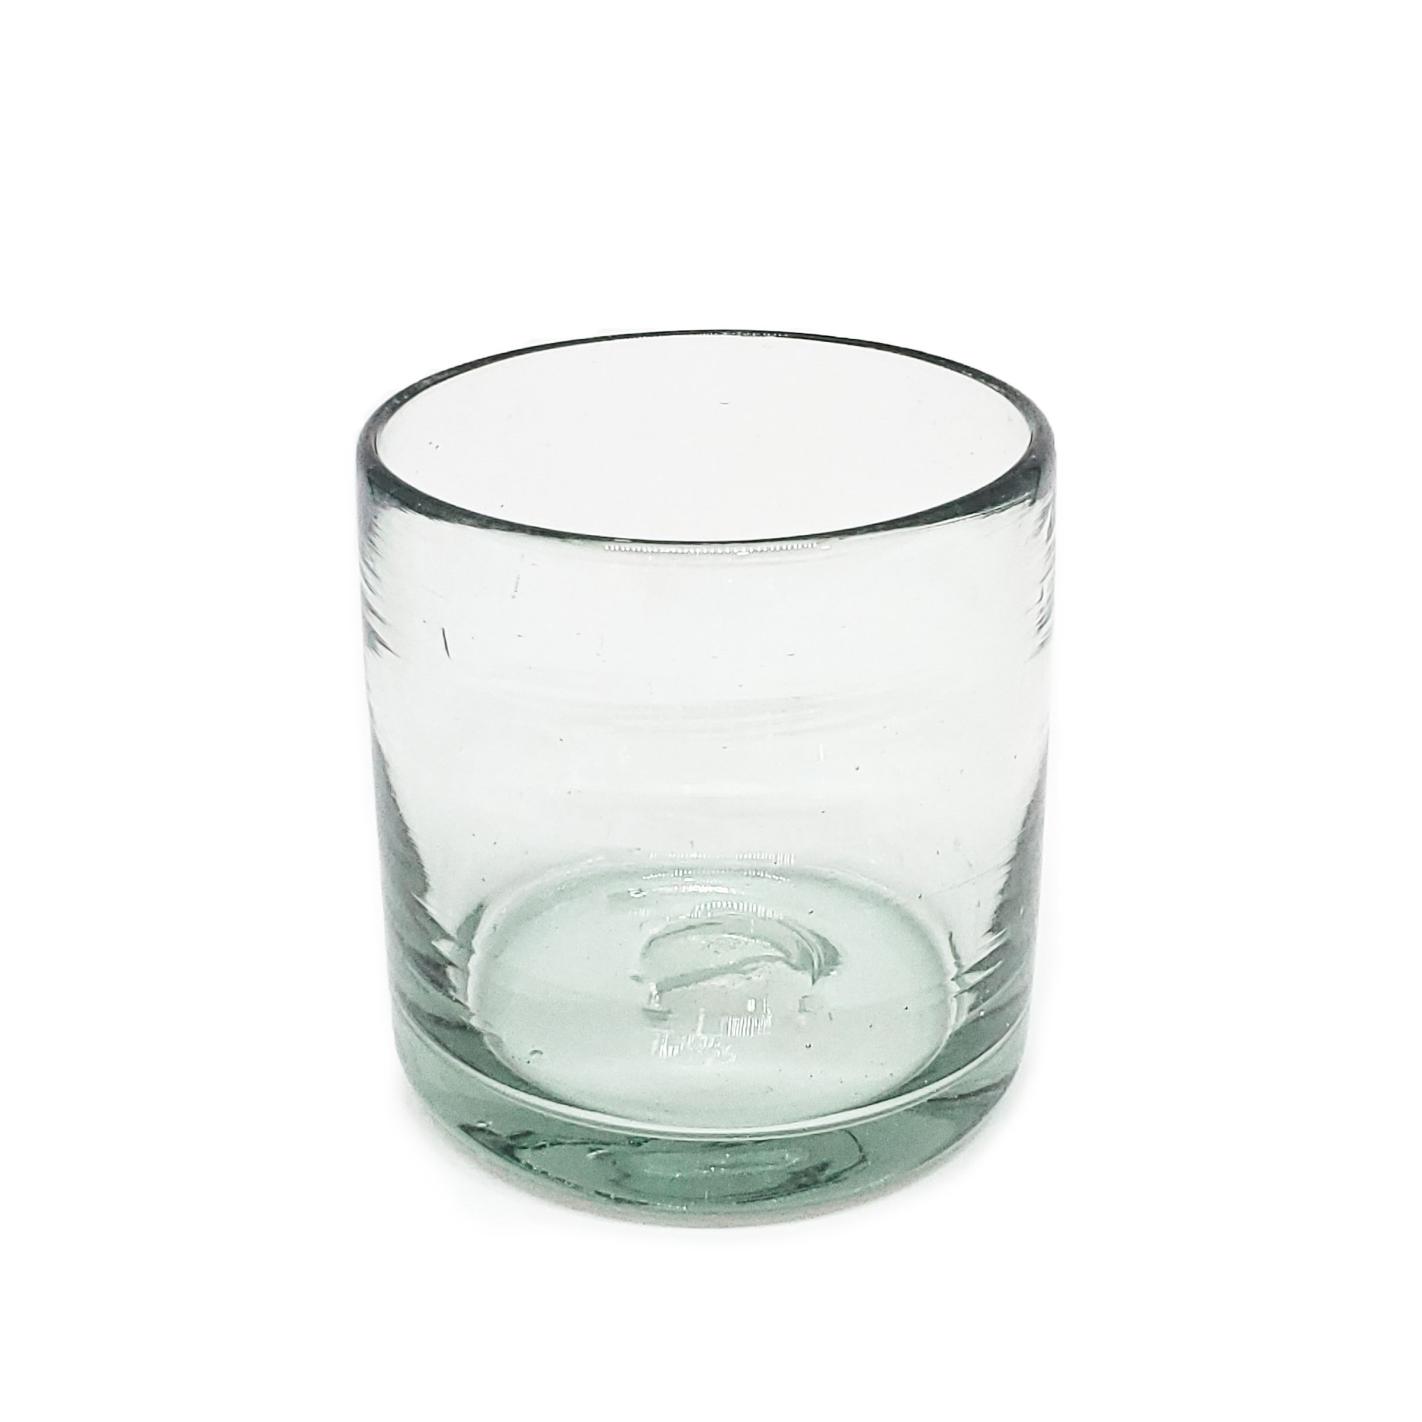 Novedades / vasos DOF 8oz Transparentes / stos artesanales vasos le darn un toque clsico a su bebida favorita.